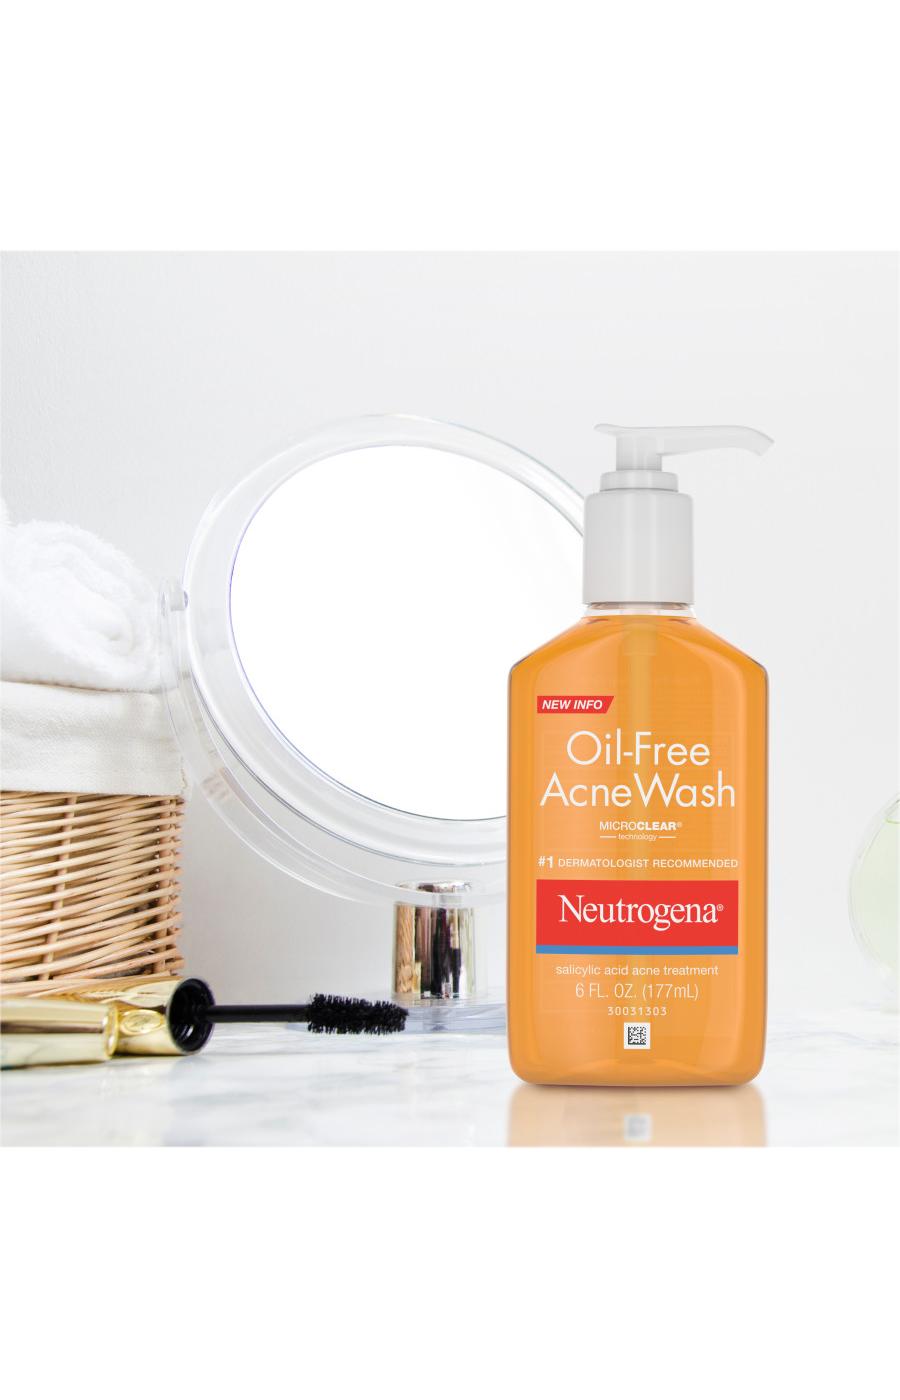 Neutrogena Oil-Free Acne Wash; image 7 of 7